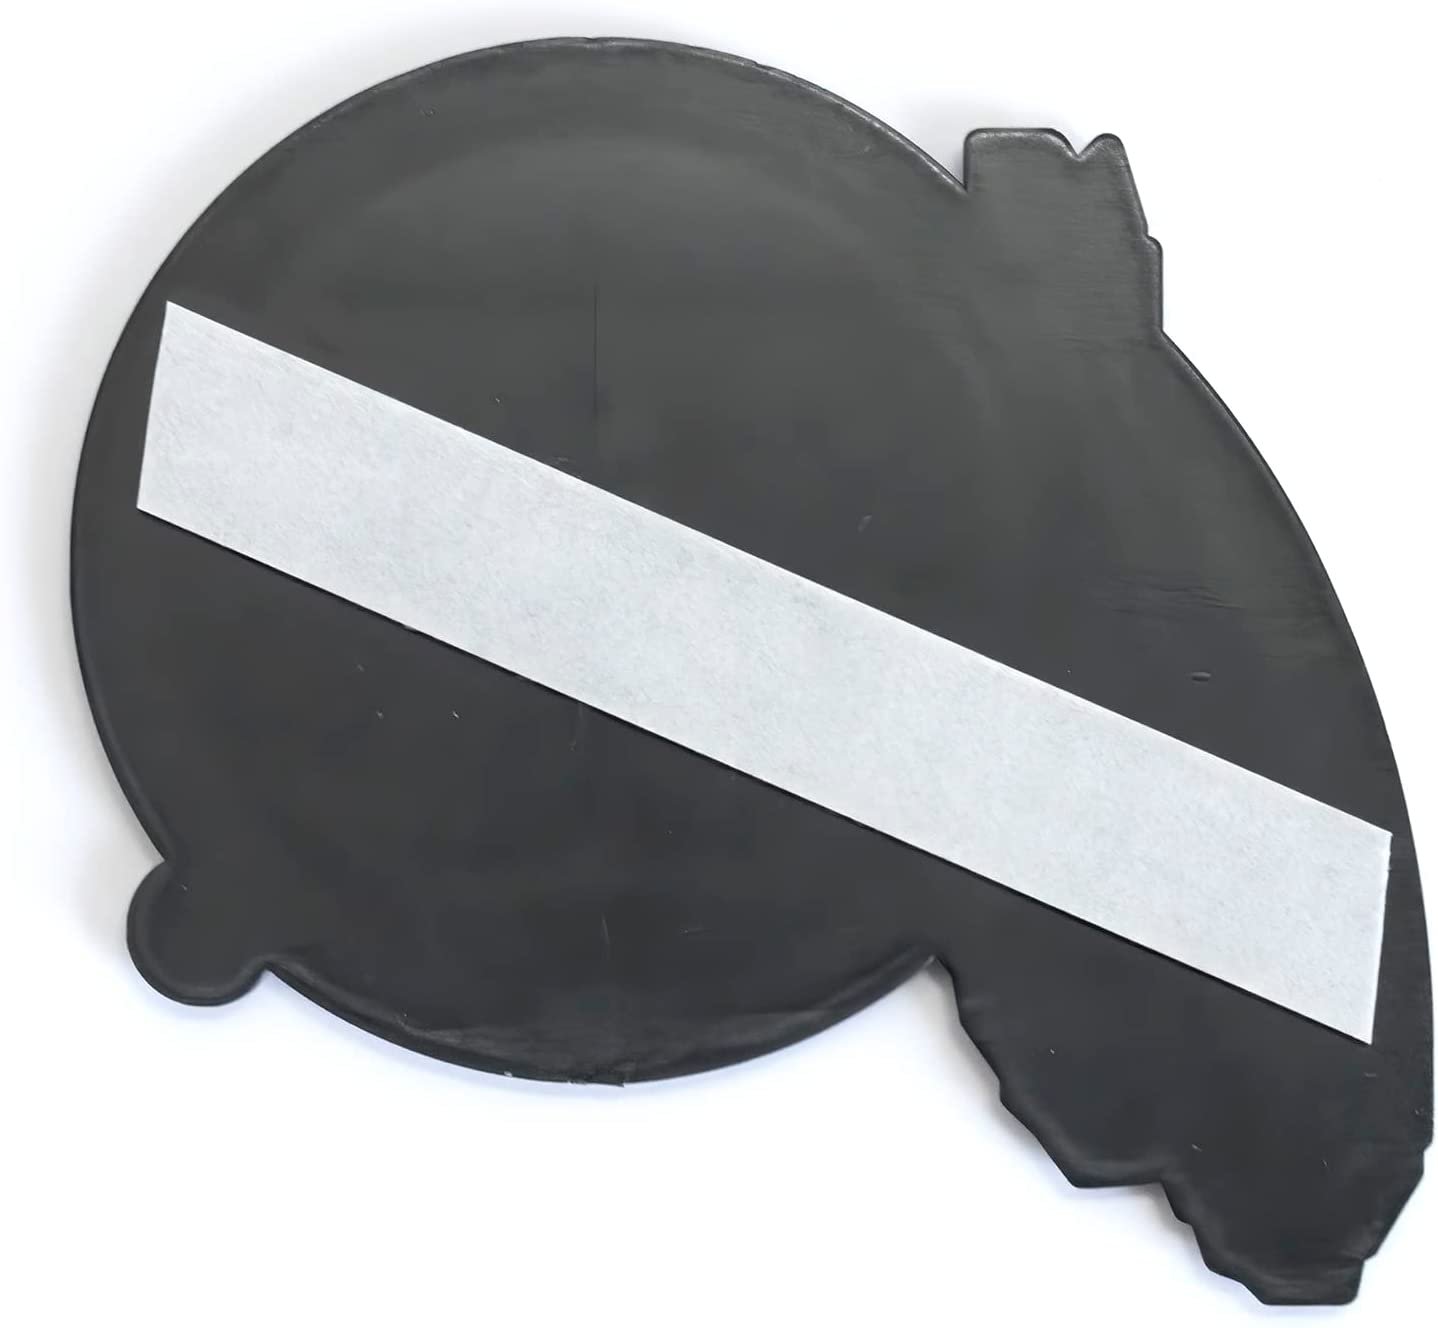 University of Washington Huskies Auto Emblem, Silver Chrome Color, Raised Molded Plastic, 3.5 Inch, Adhesive Tape Backing